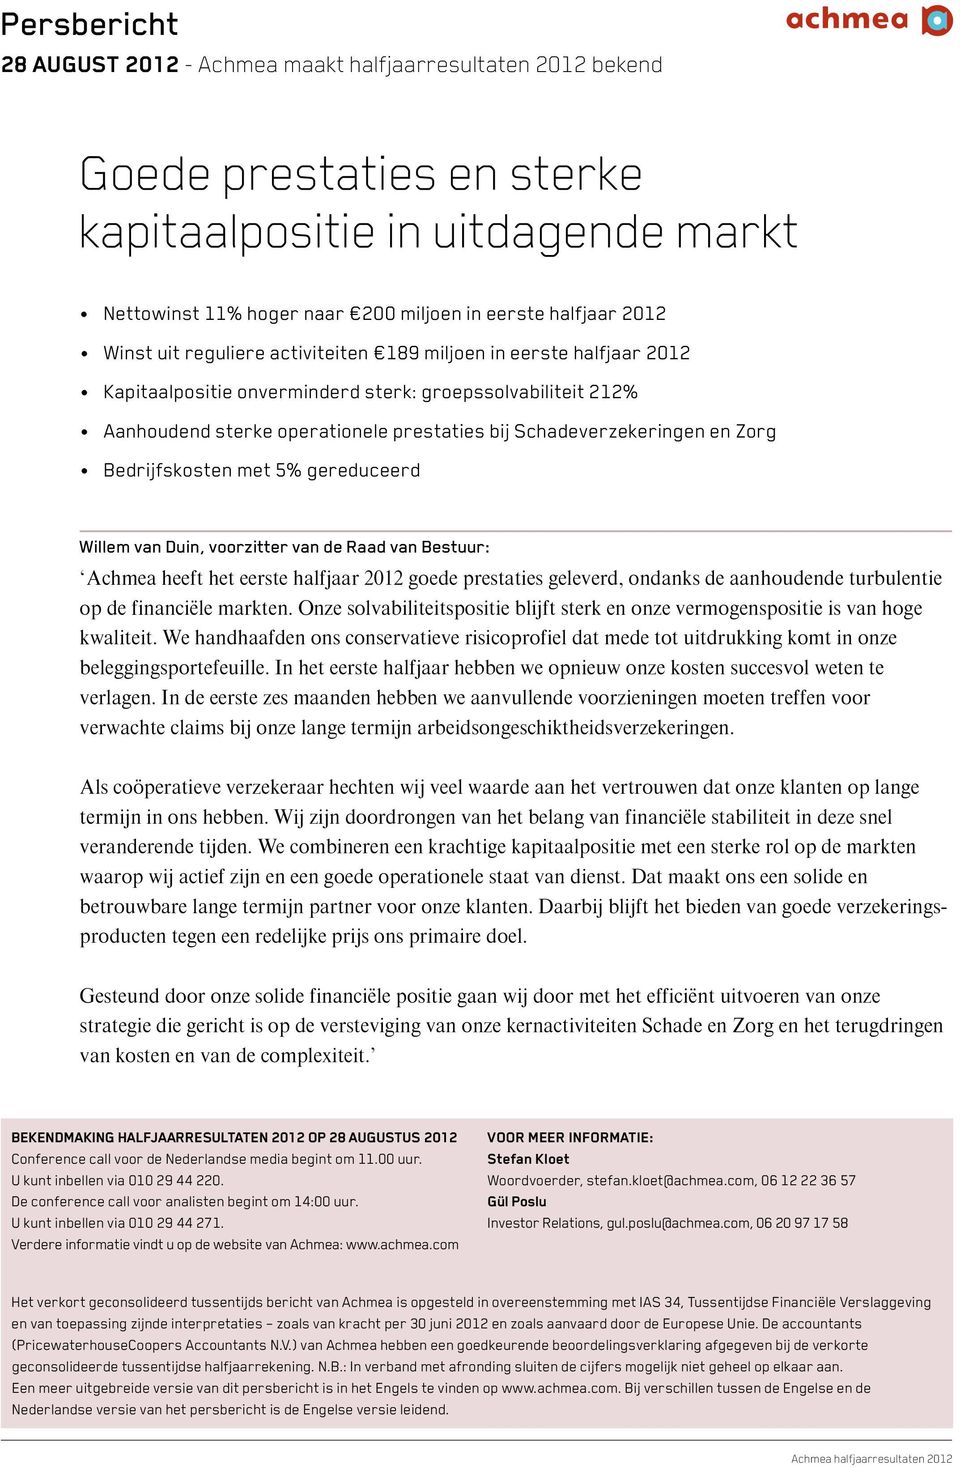 Zorg Bedrijfskosten met 5% gereduceerd Willem van Duin, voorzitter van de Raad van Bestuur: Achmea heeft het eerste halfjaar 2012 goede prestaties geleverd, ondanks de aanhoudende turbulentie op de